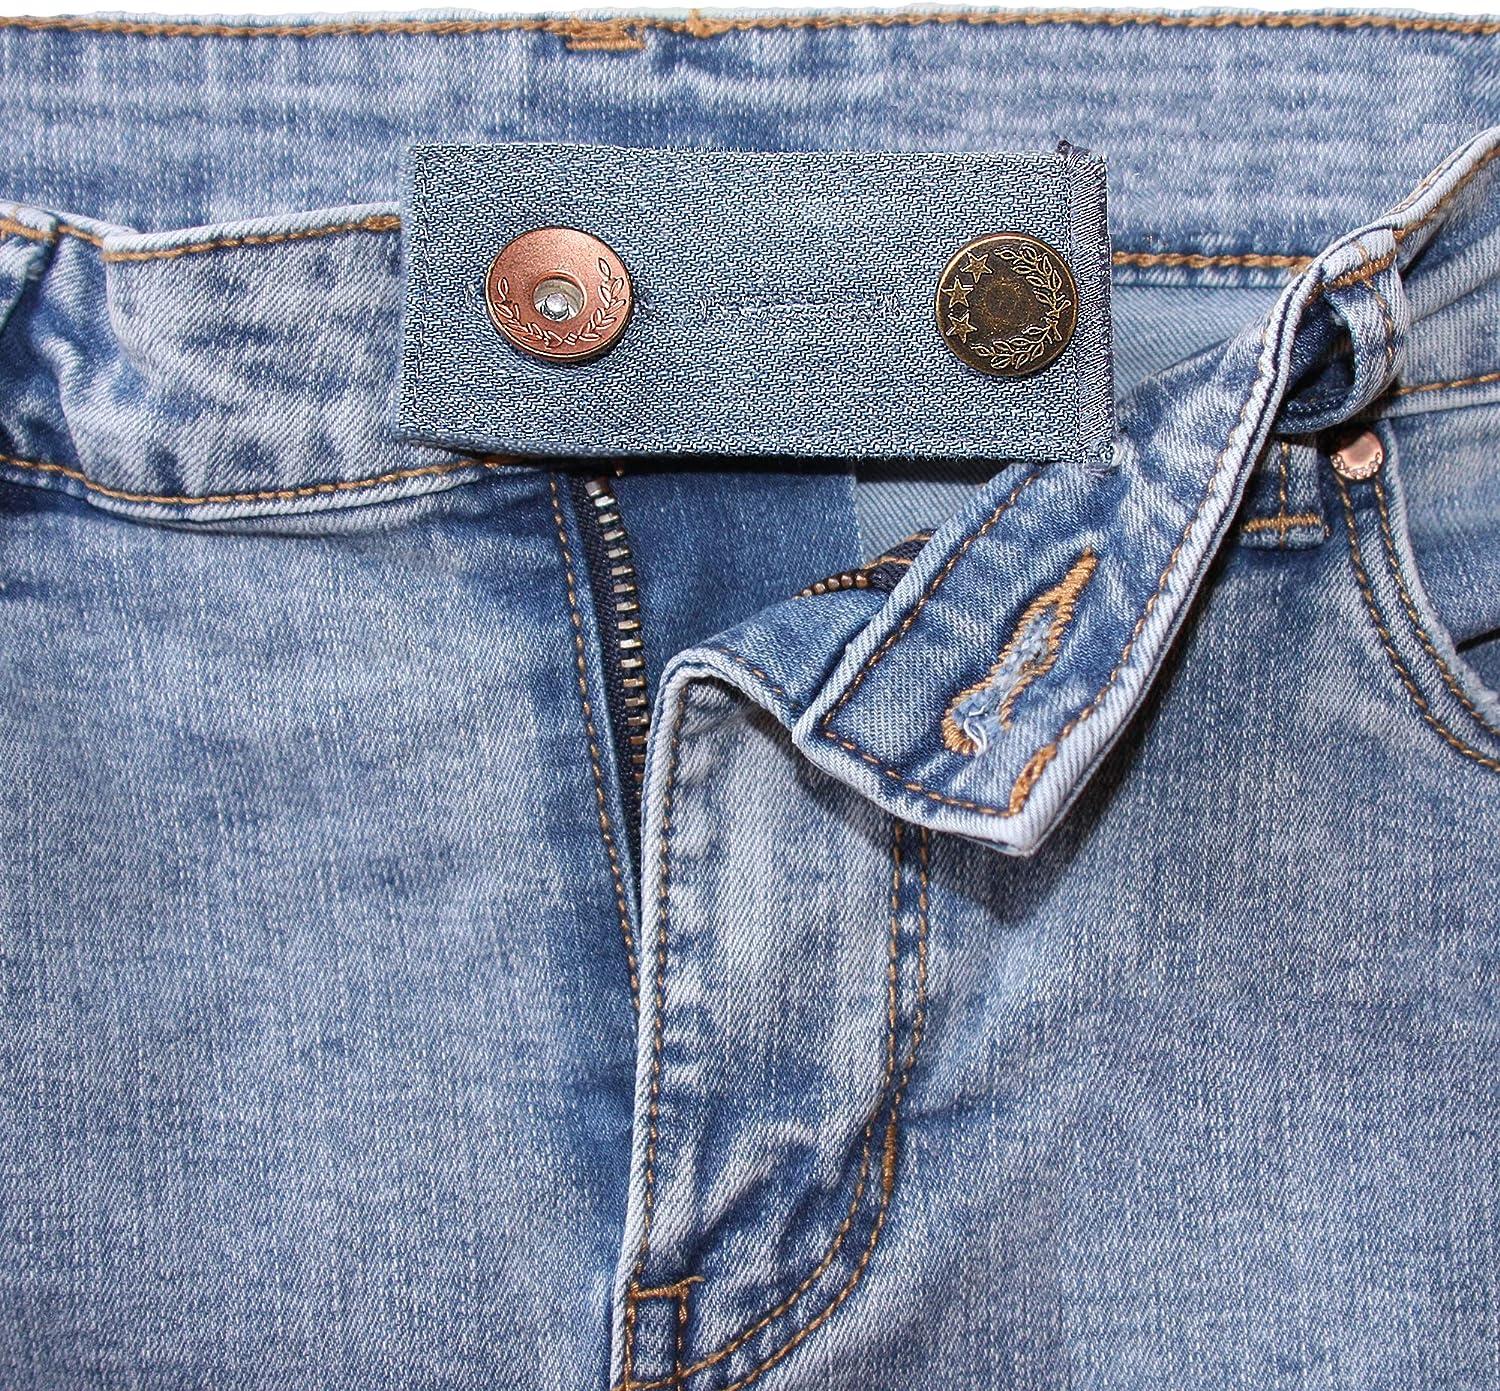 4x pants extender waistband extender jean waist extender for